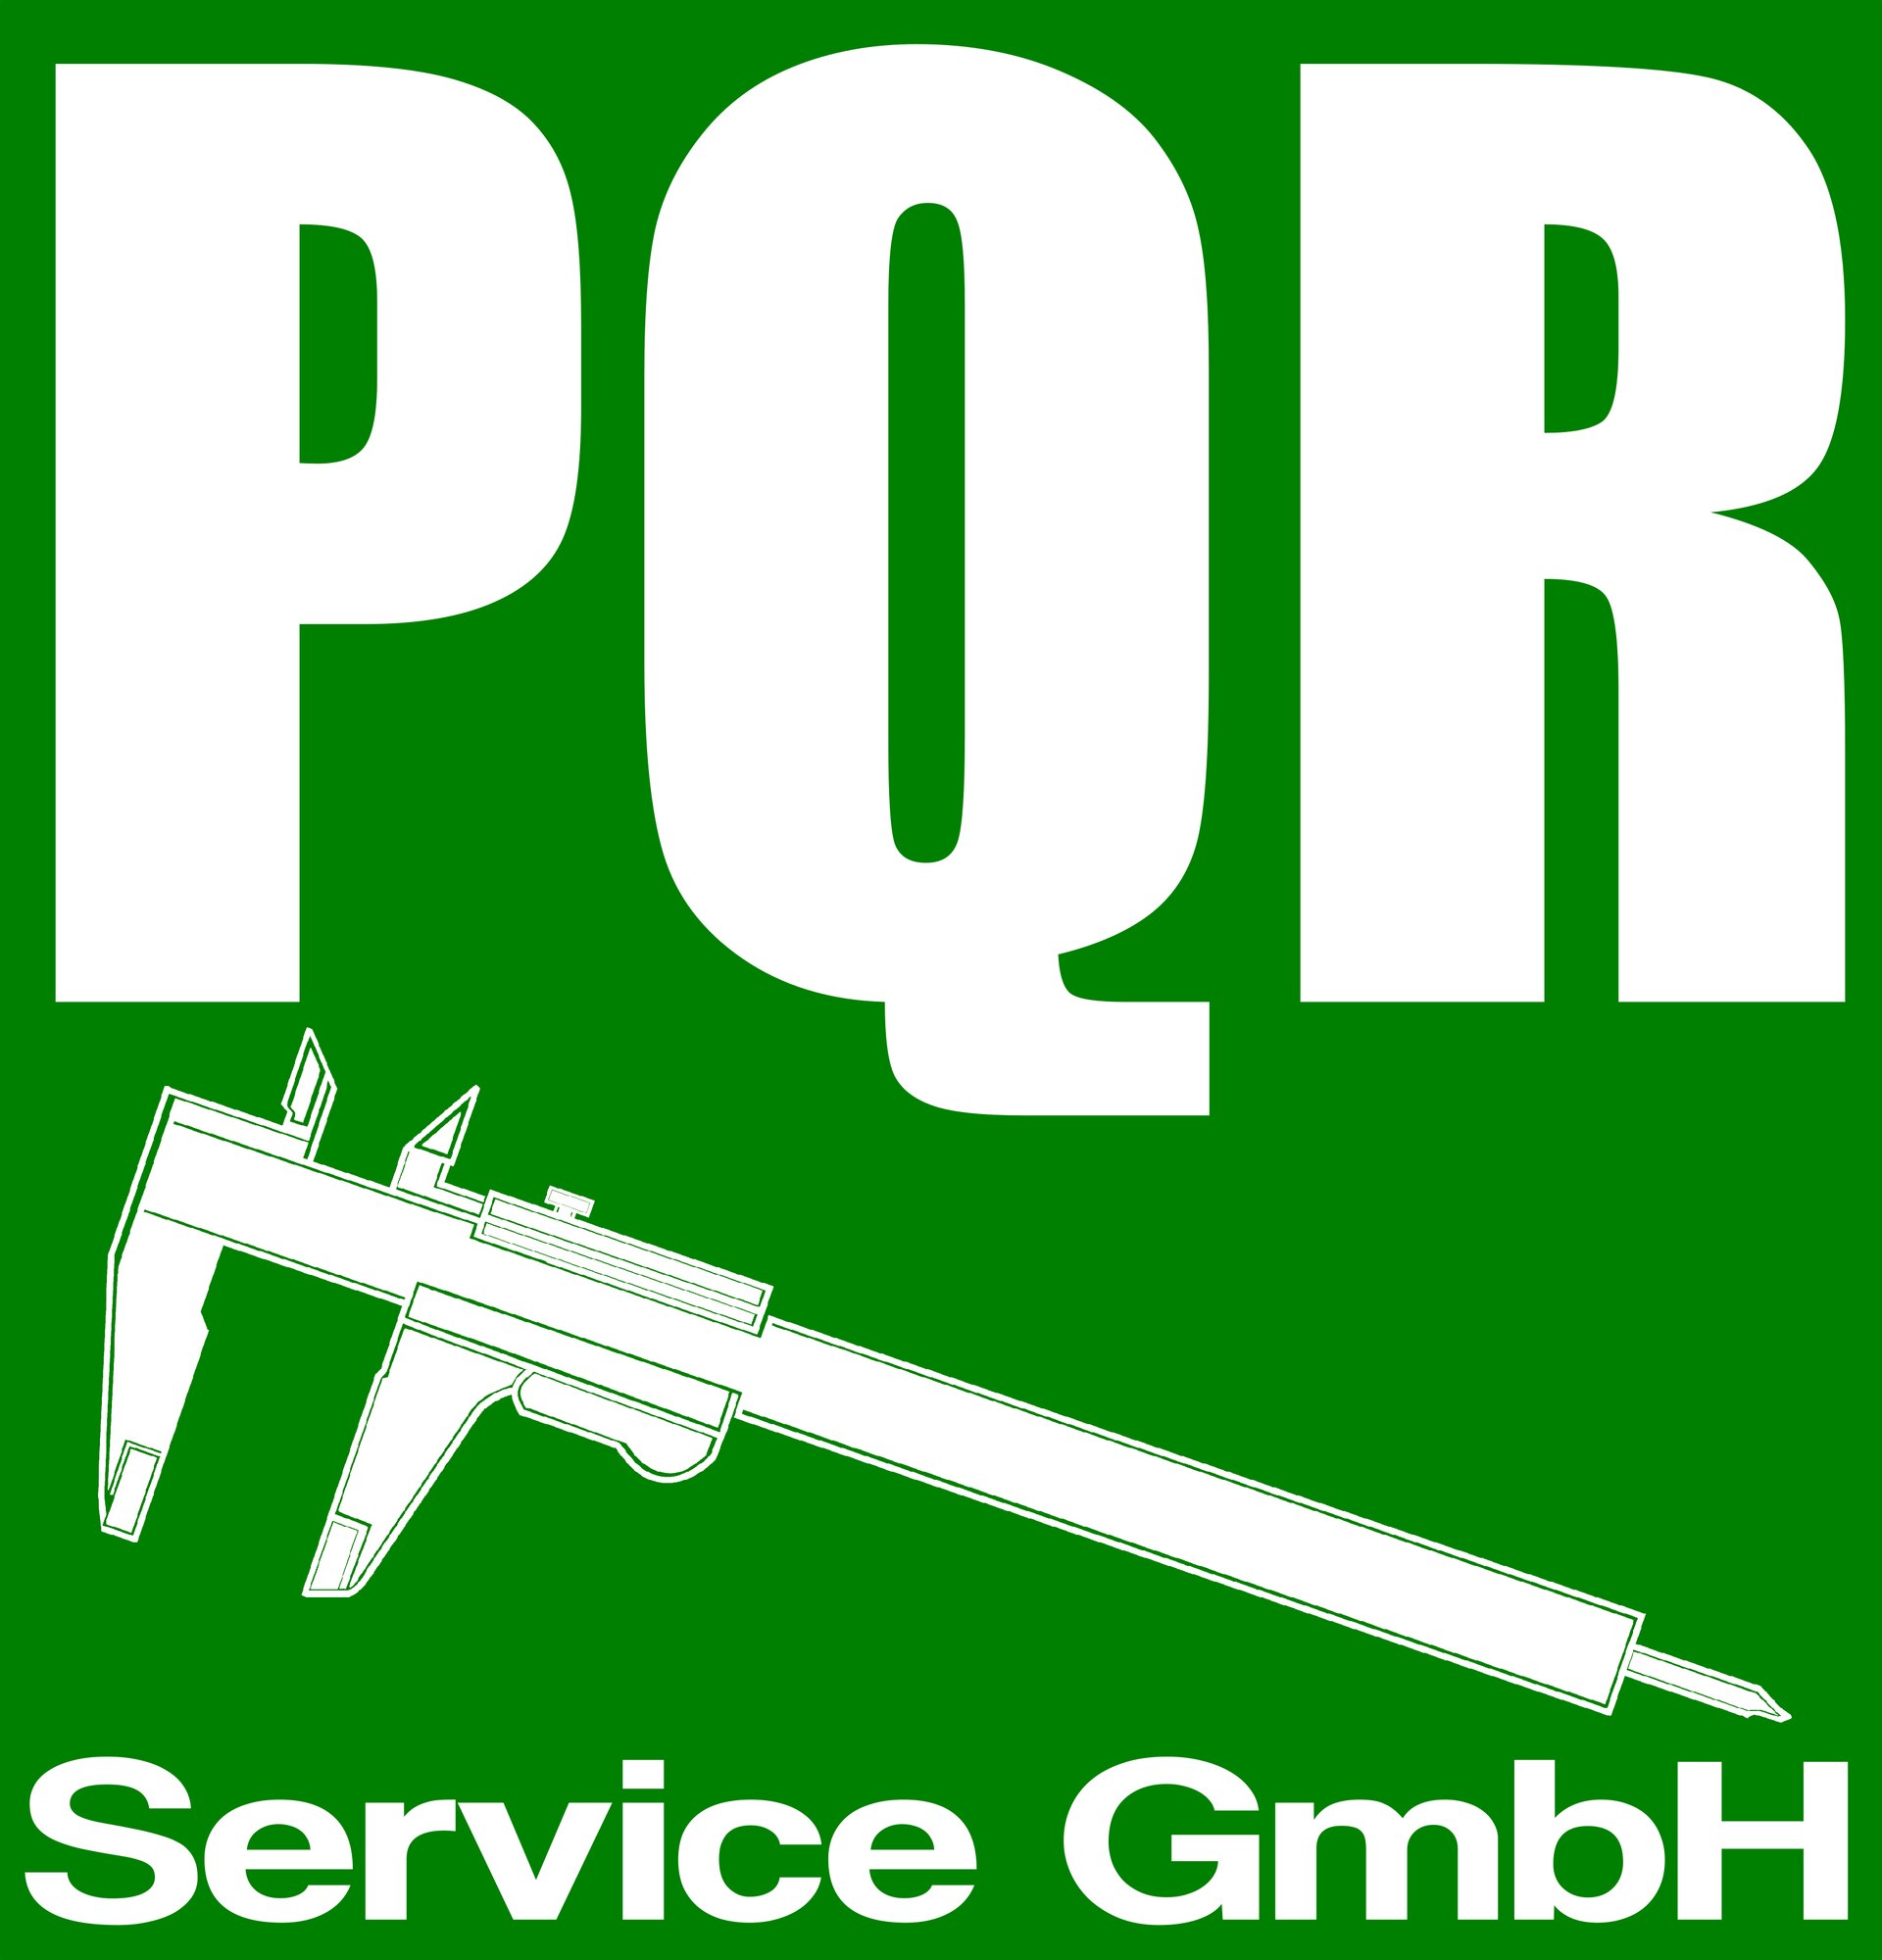 Ein grün-weißes Logo für die pqr service gmbh